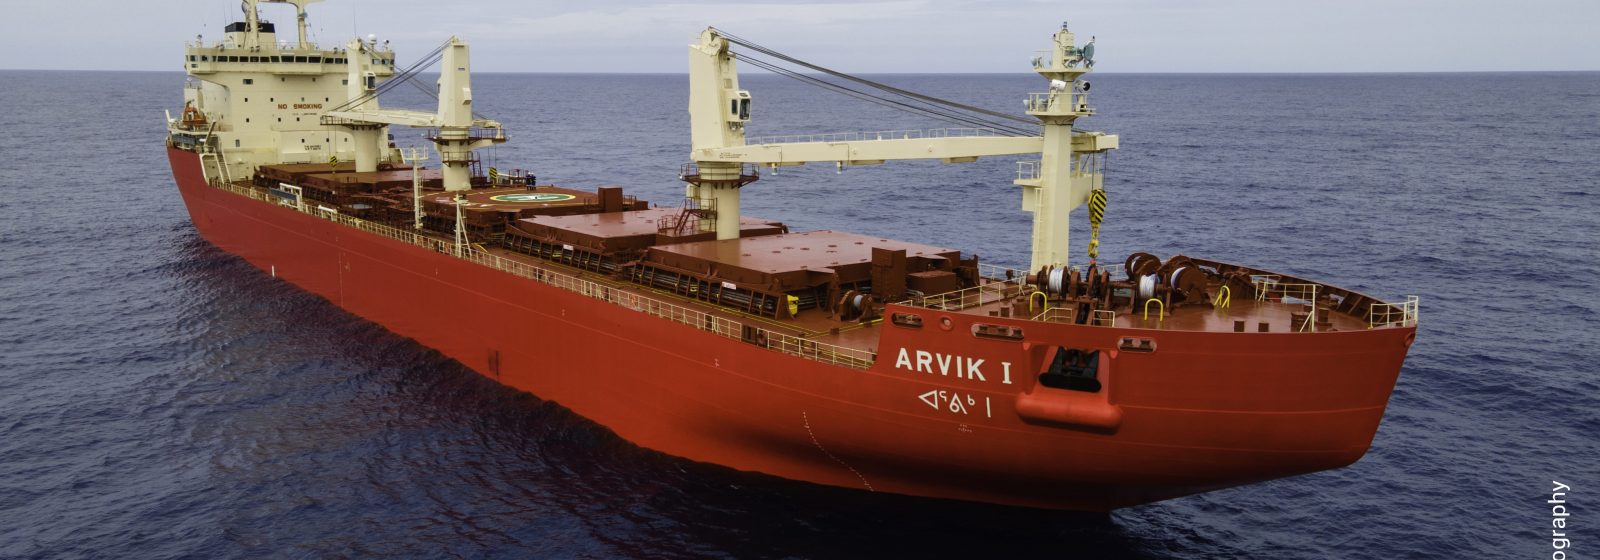 IJsbrekende bulkcarrier 'MV Arvik I' van Fednav